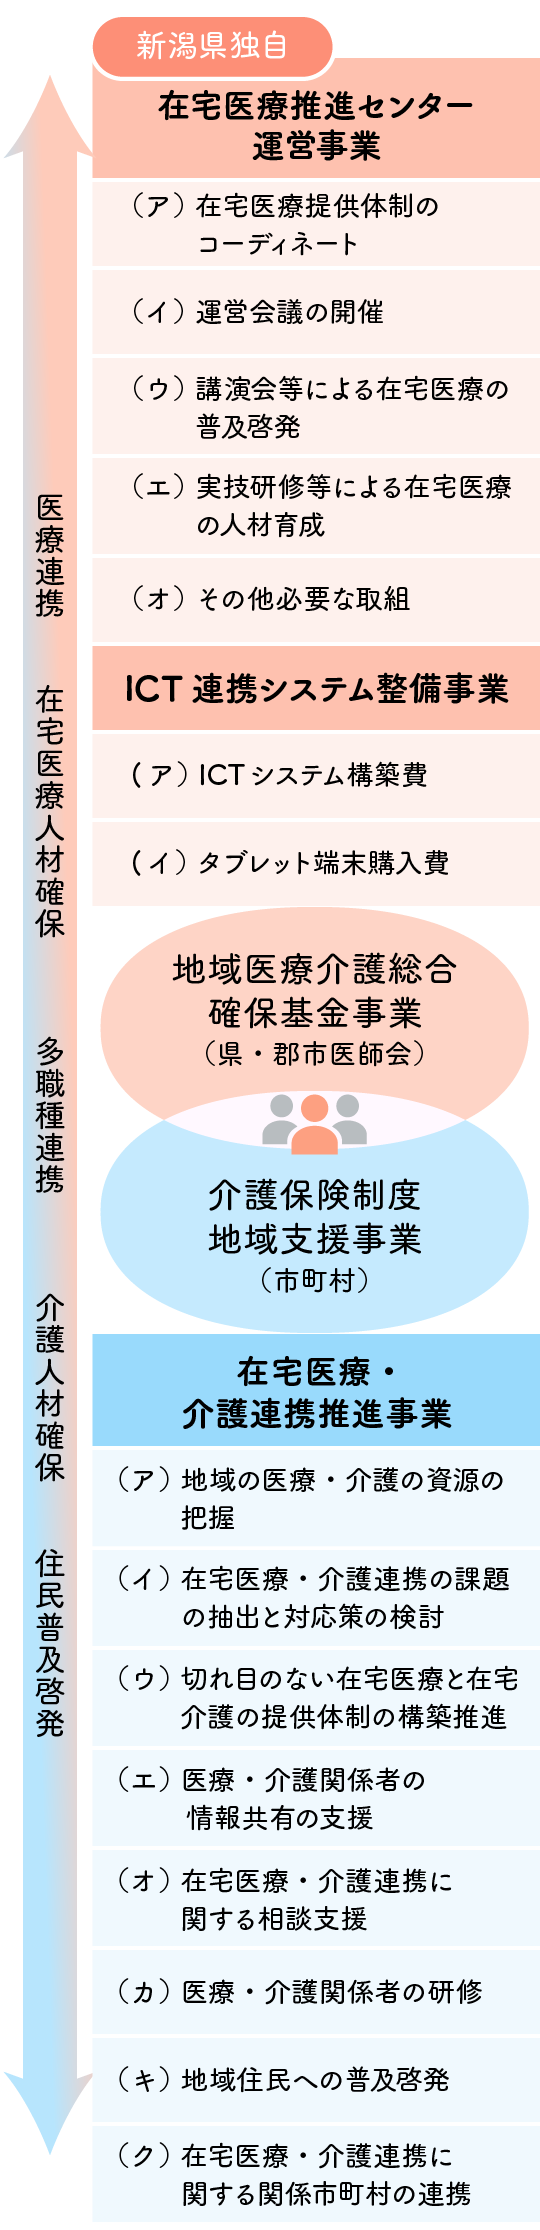 新潟県における在宅医療・介護連携推進事業と推進センター事業の連携